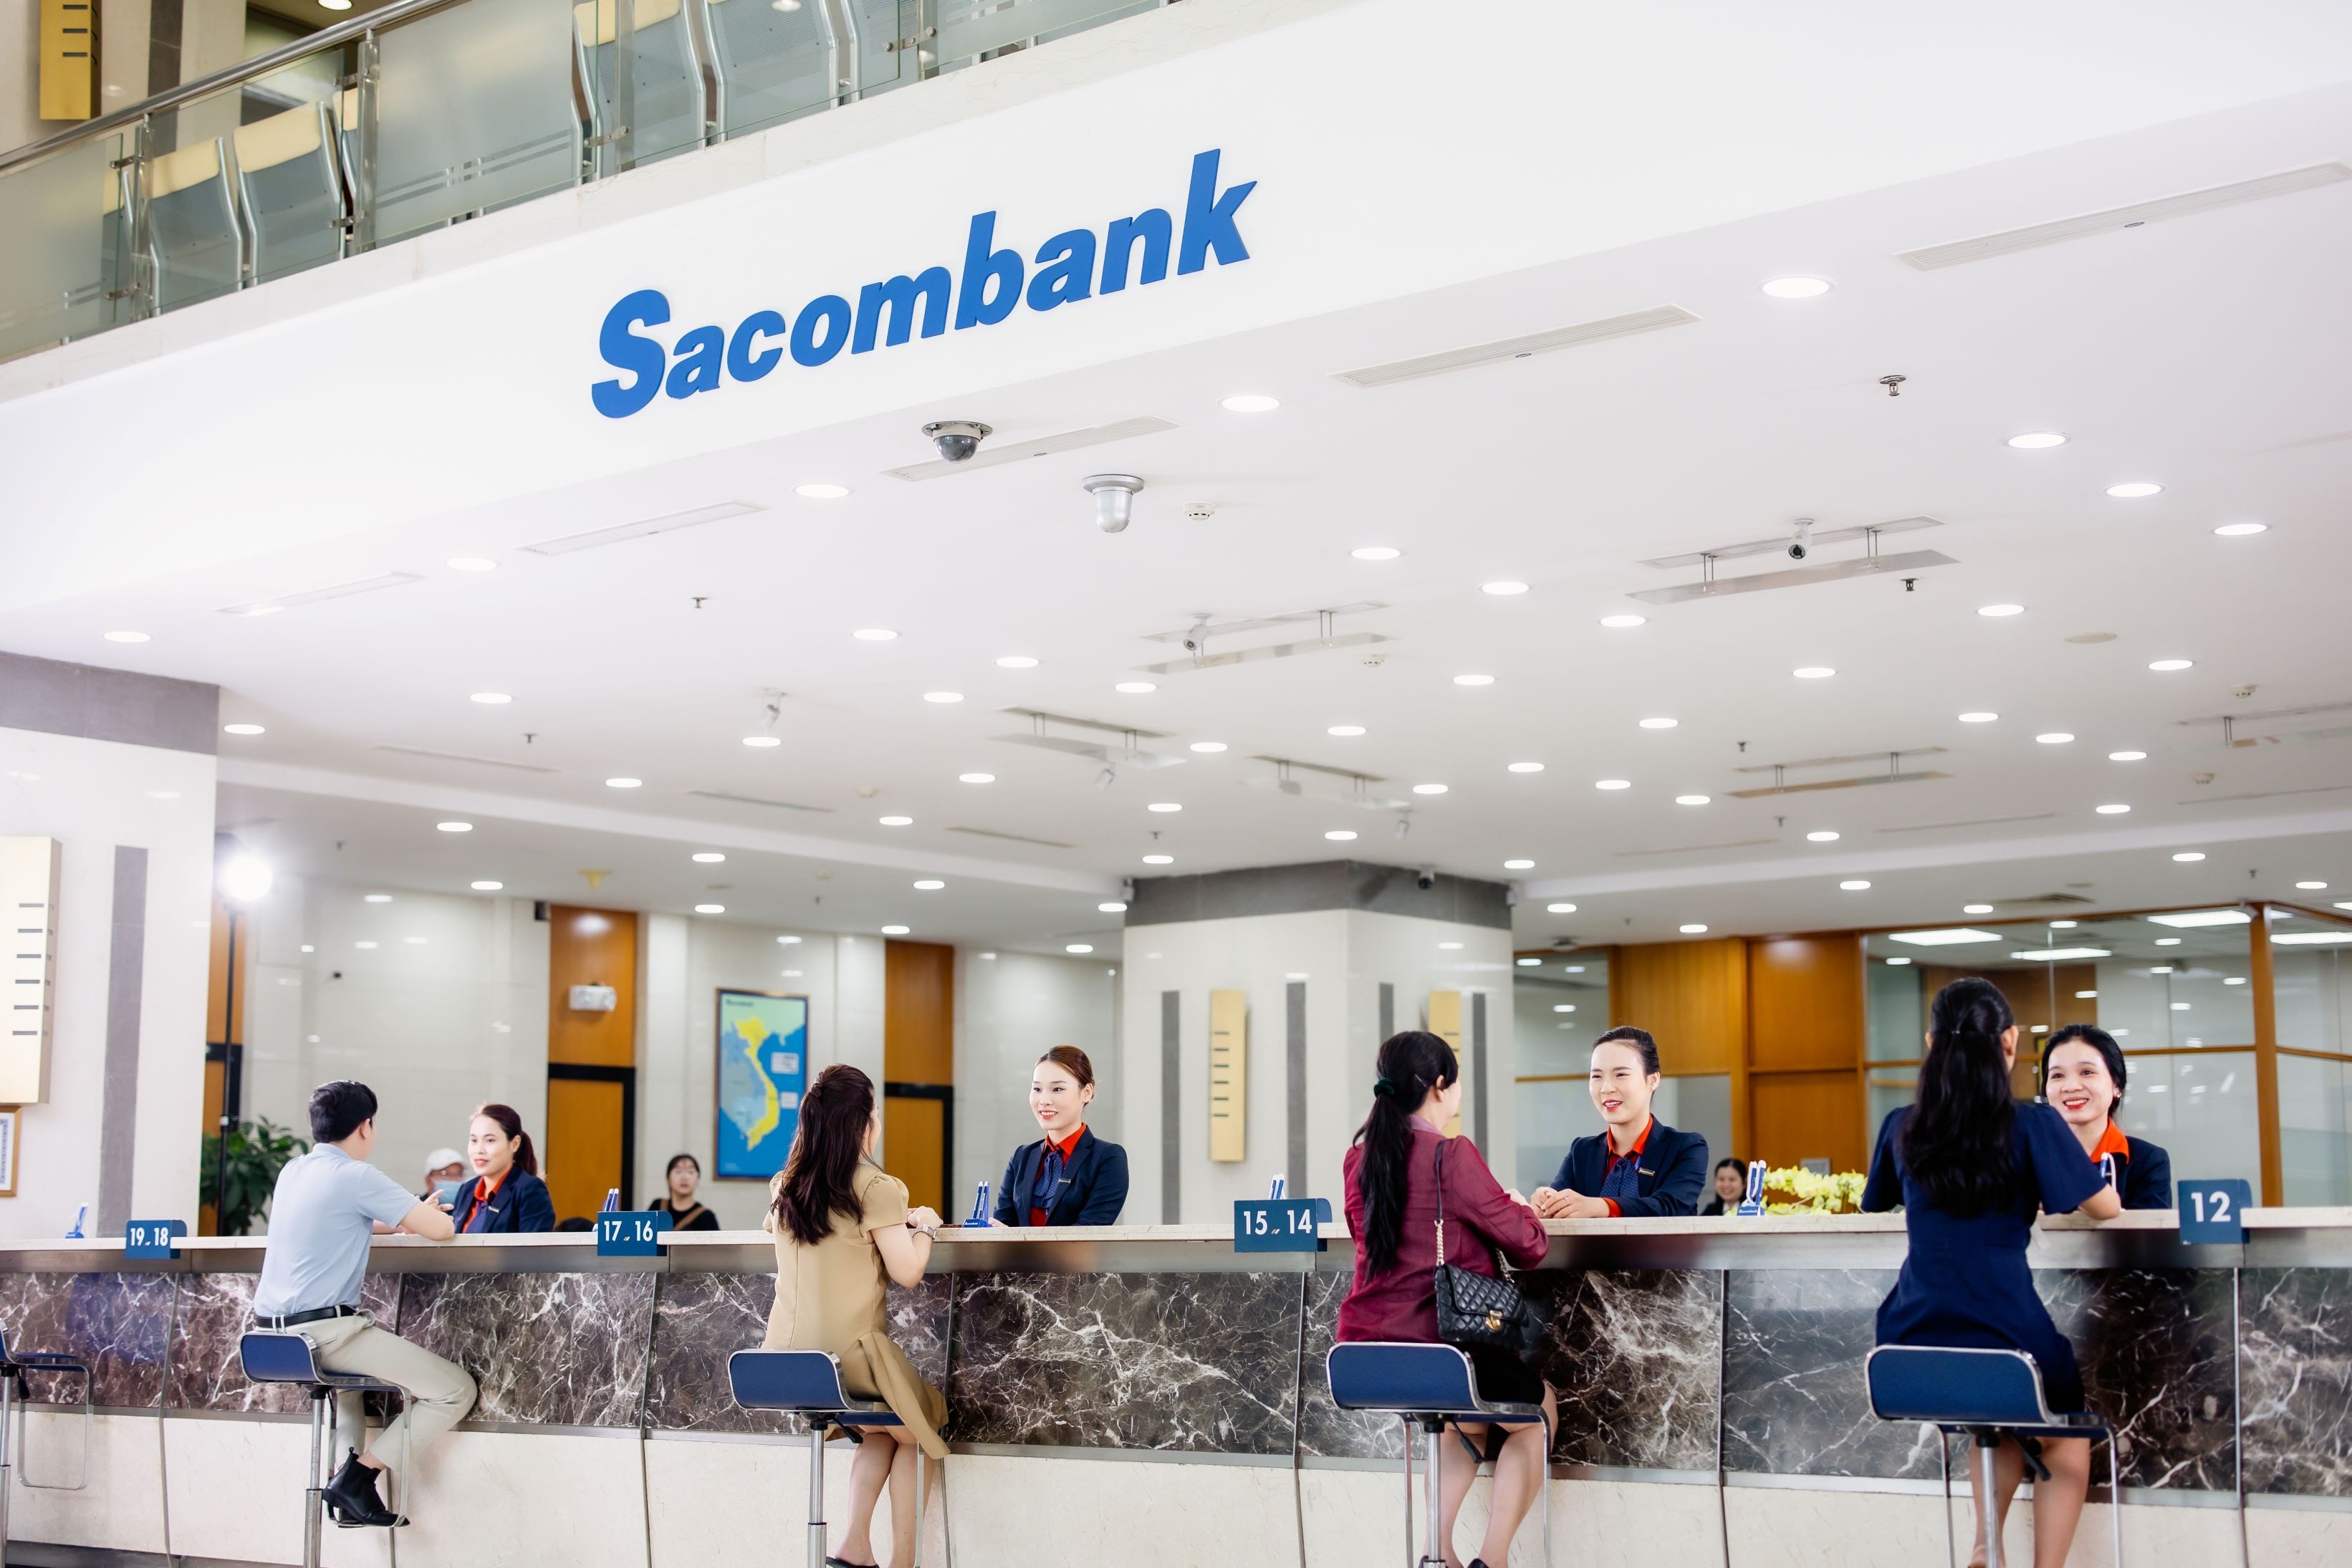 Lấy khách hàng làm trọng tâm, Sacombank tập trung cải tiến sản phẩm dịch vụ theo hướng số hóa đồng thời không ngừng nâng cao chất lượng phục vụ, hướng đến một trải nghiệm liền mạch và toàn diện.